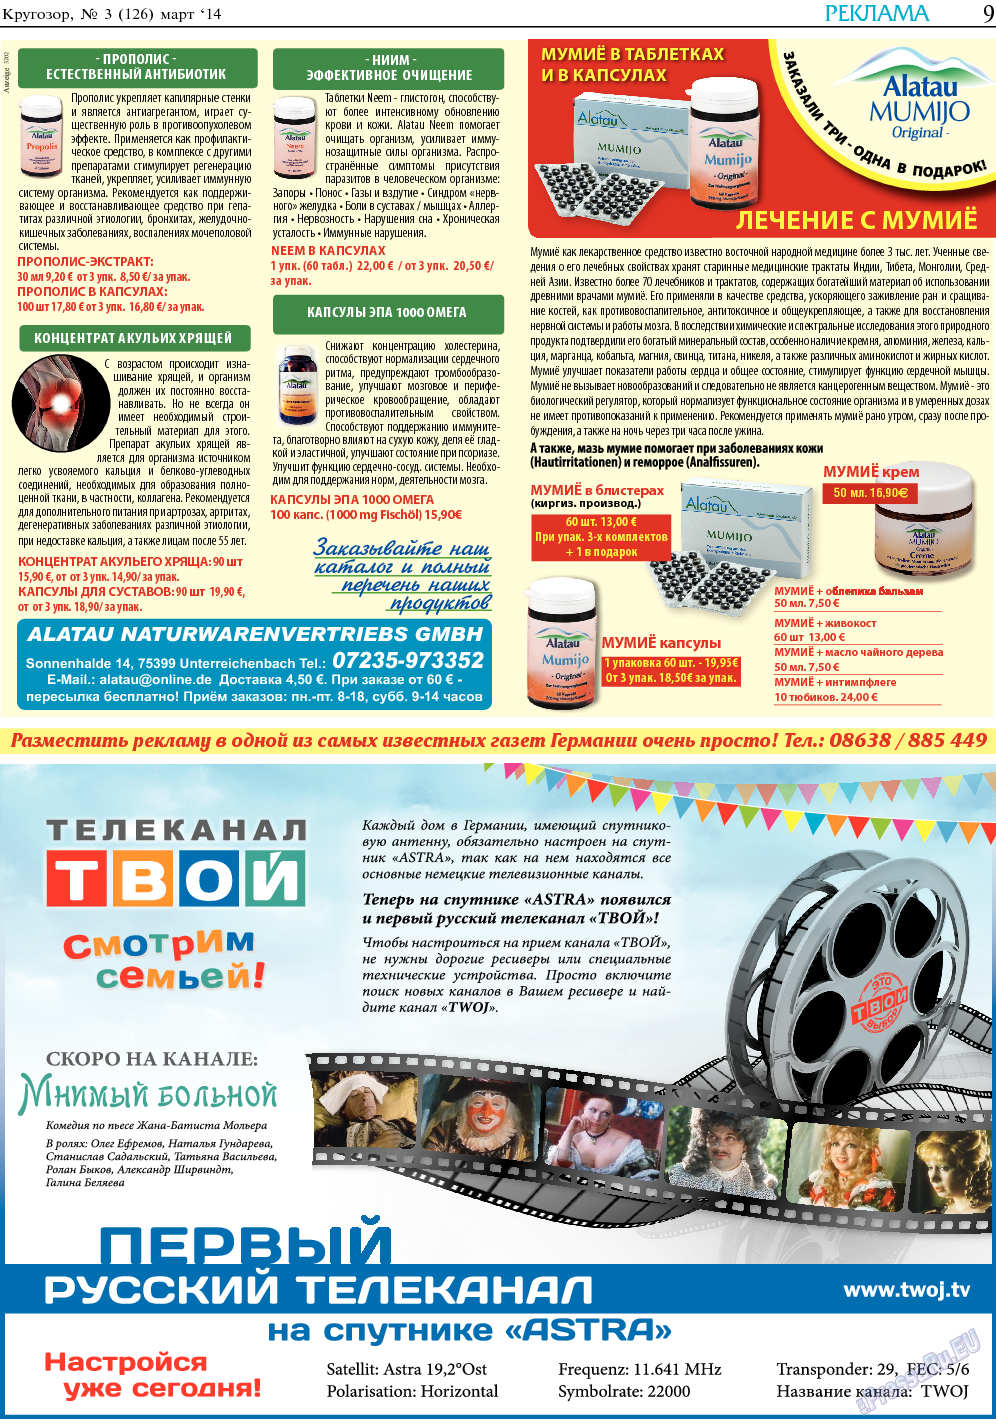 Кругозор, газета. 2014 №3 стр.9